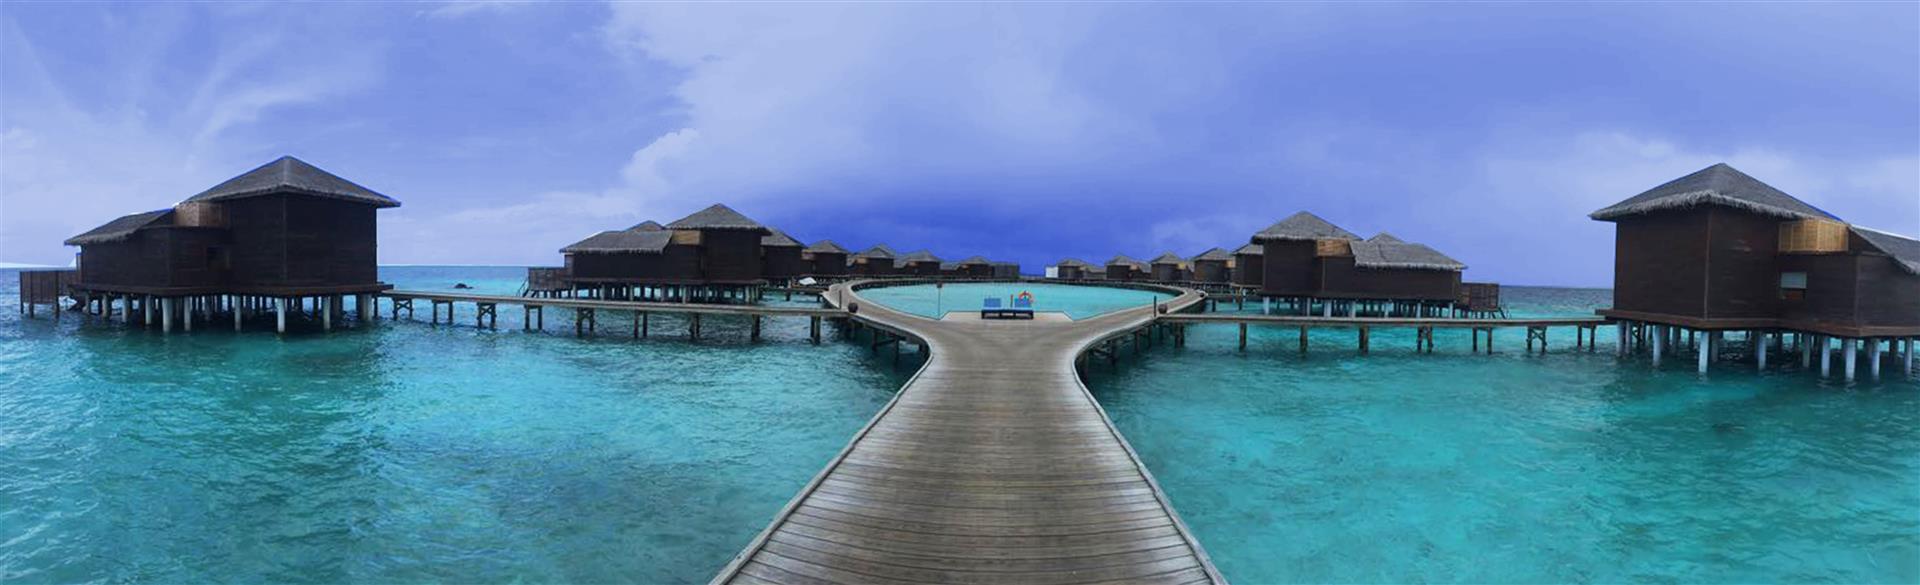 Dhevanafushi Maldives Luxury Resort (2) (Large)